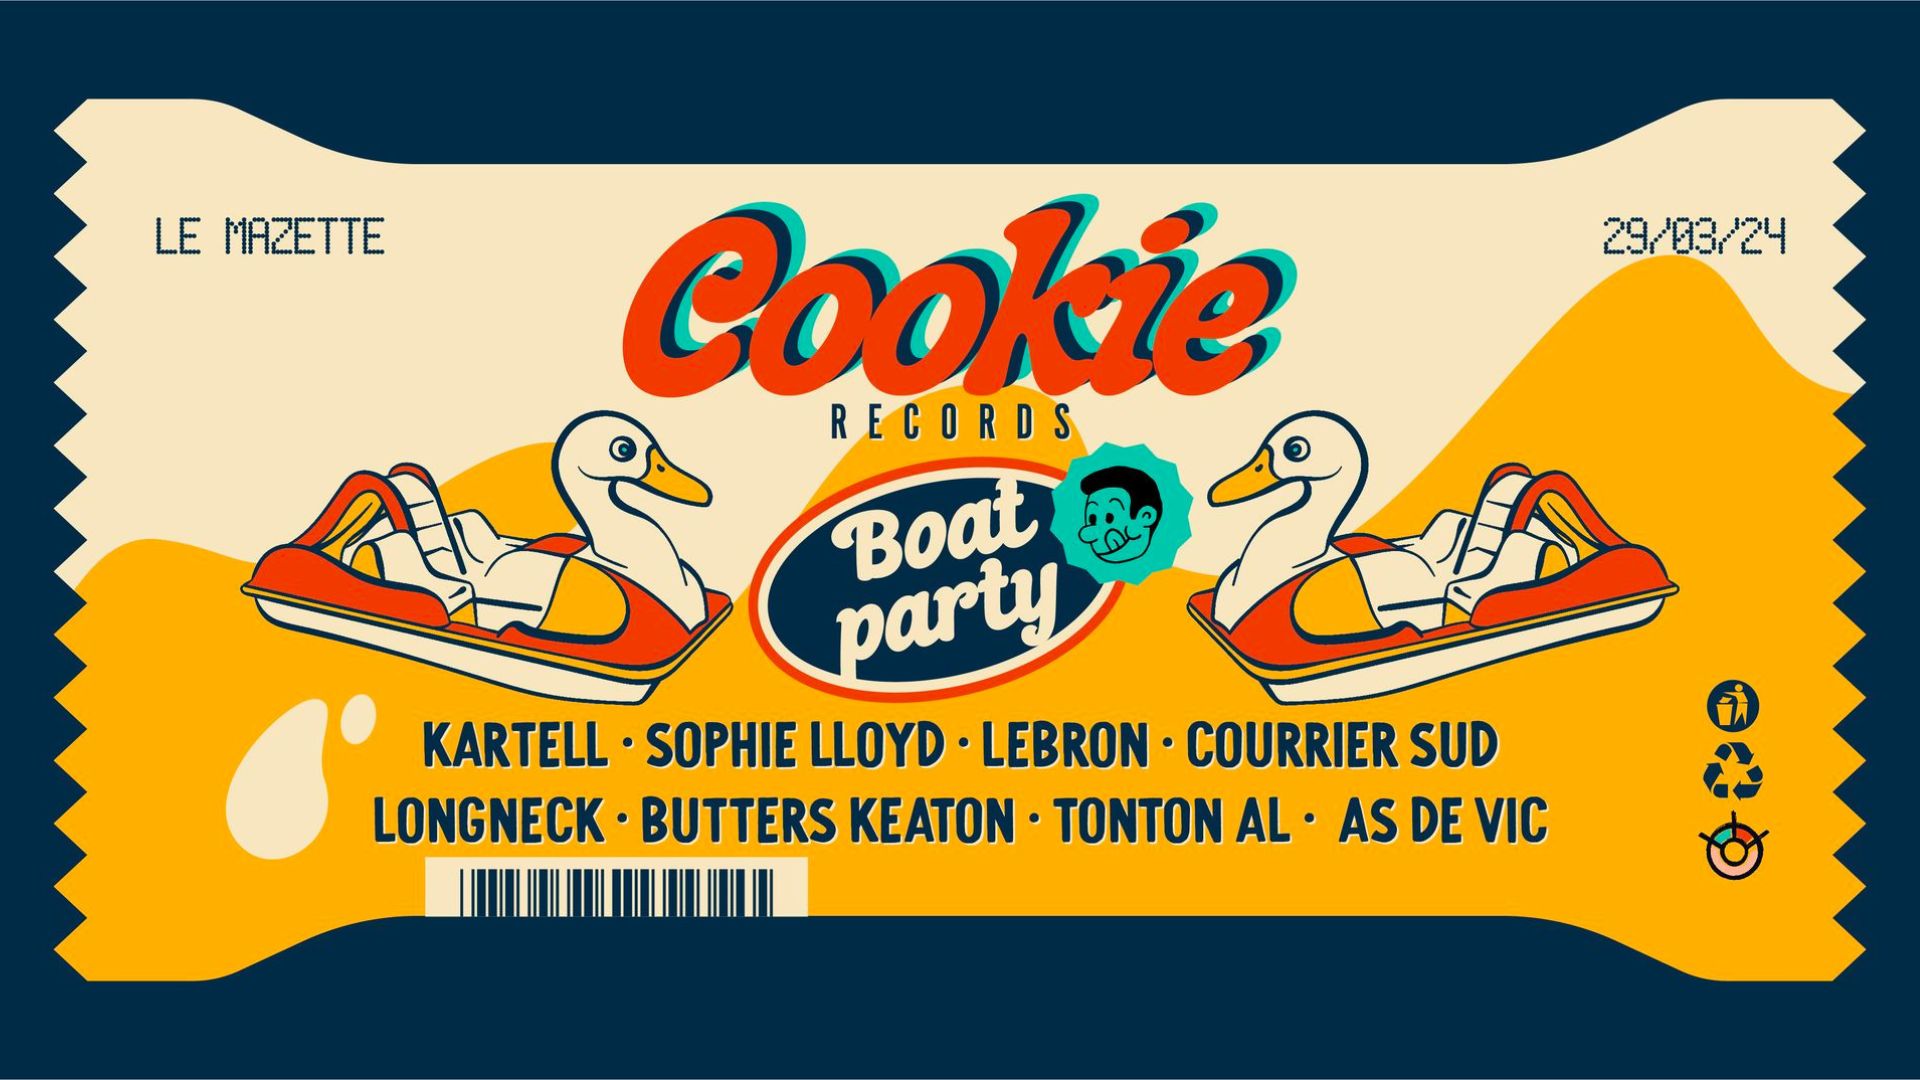 Affiche de la boat party Cookie Records